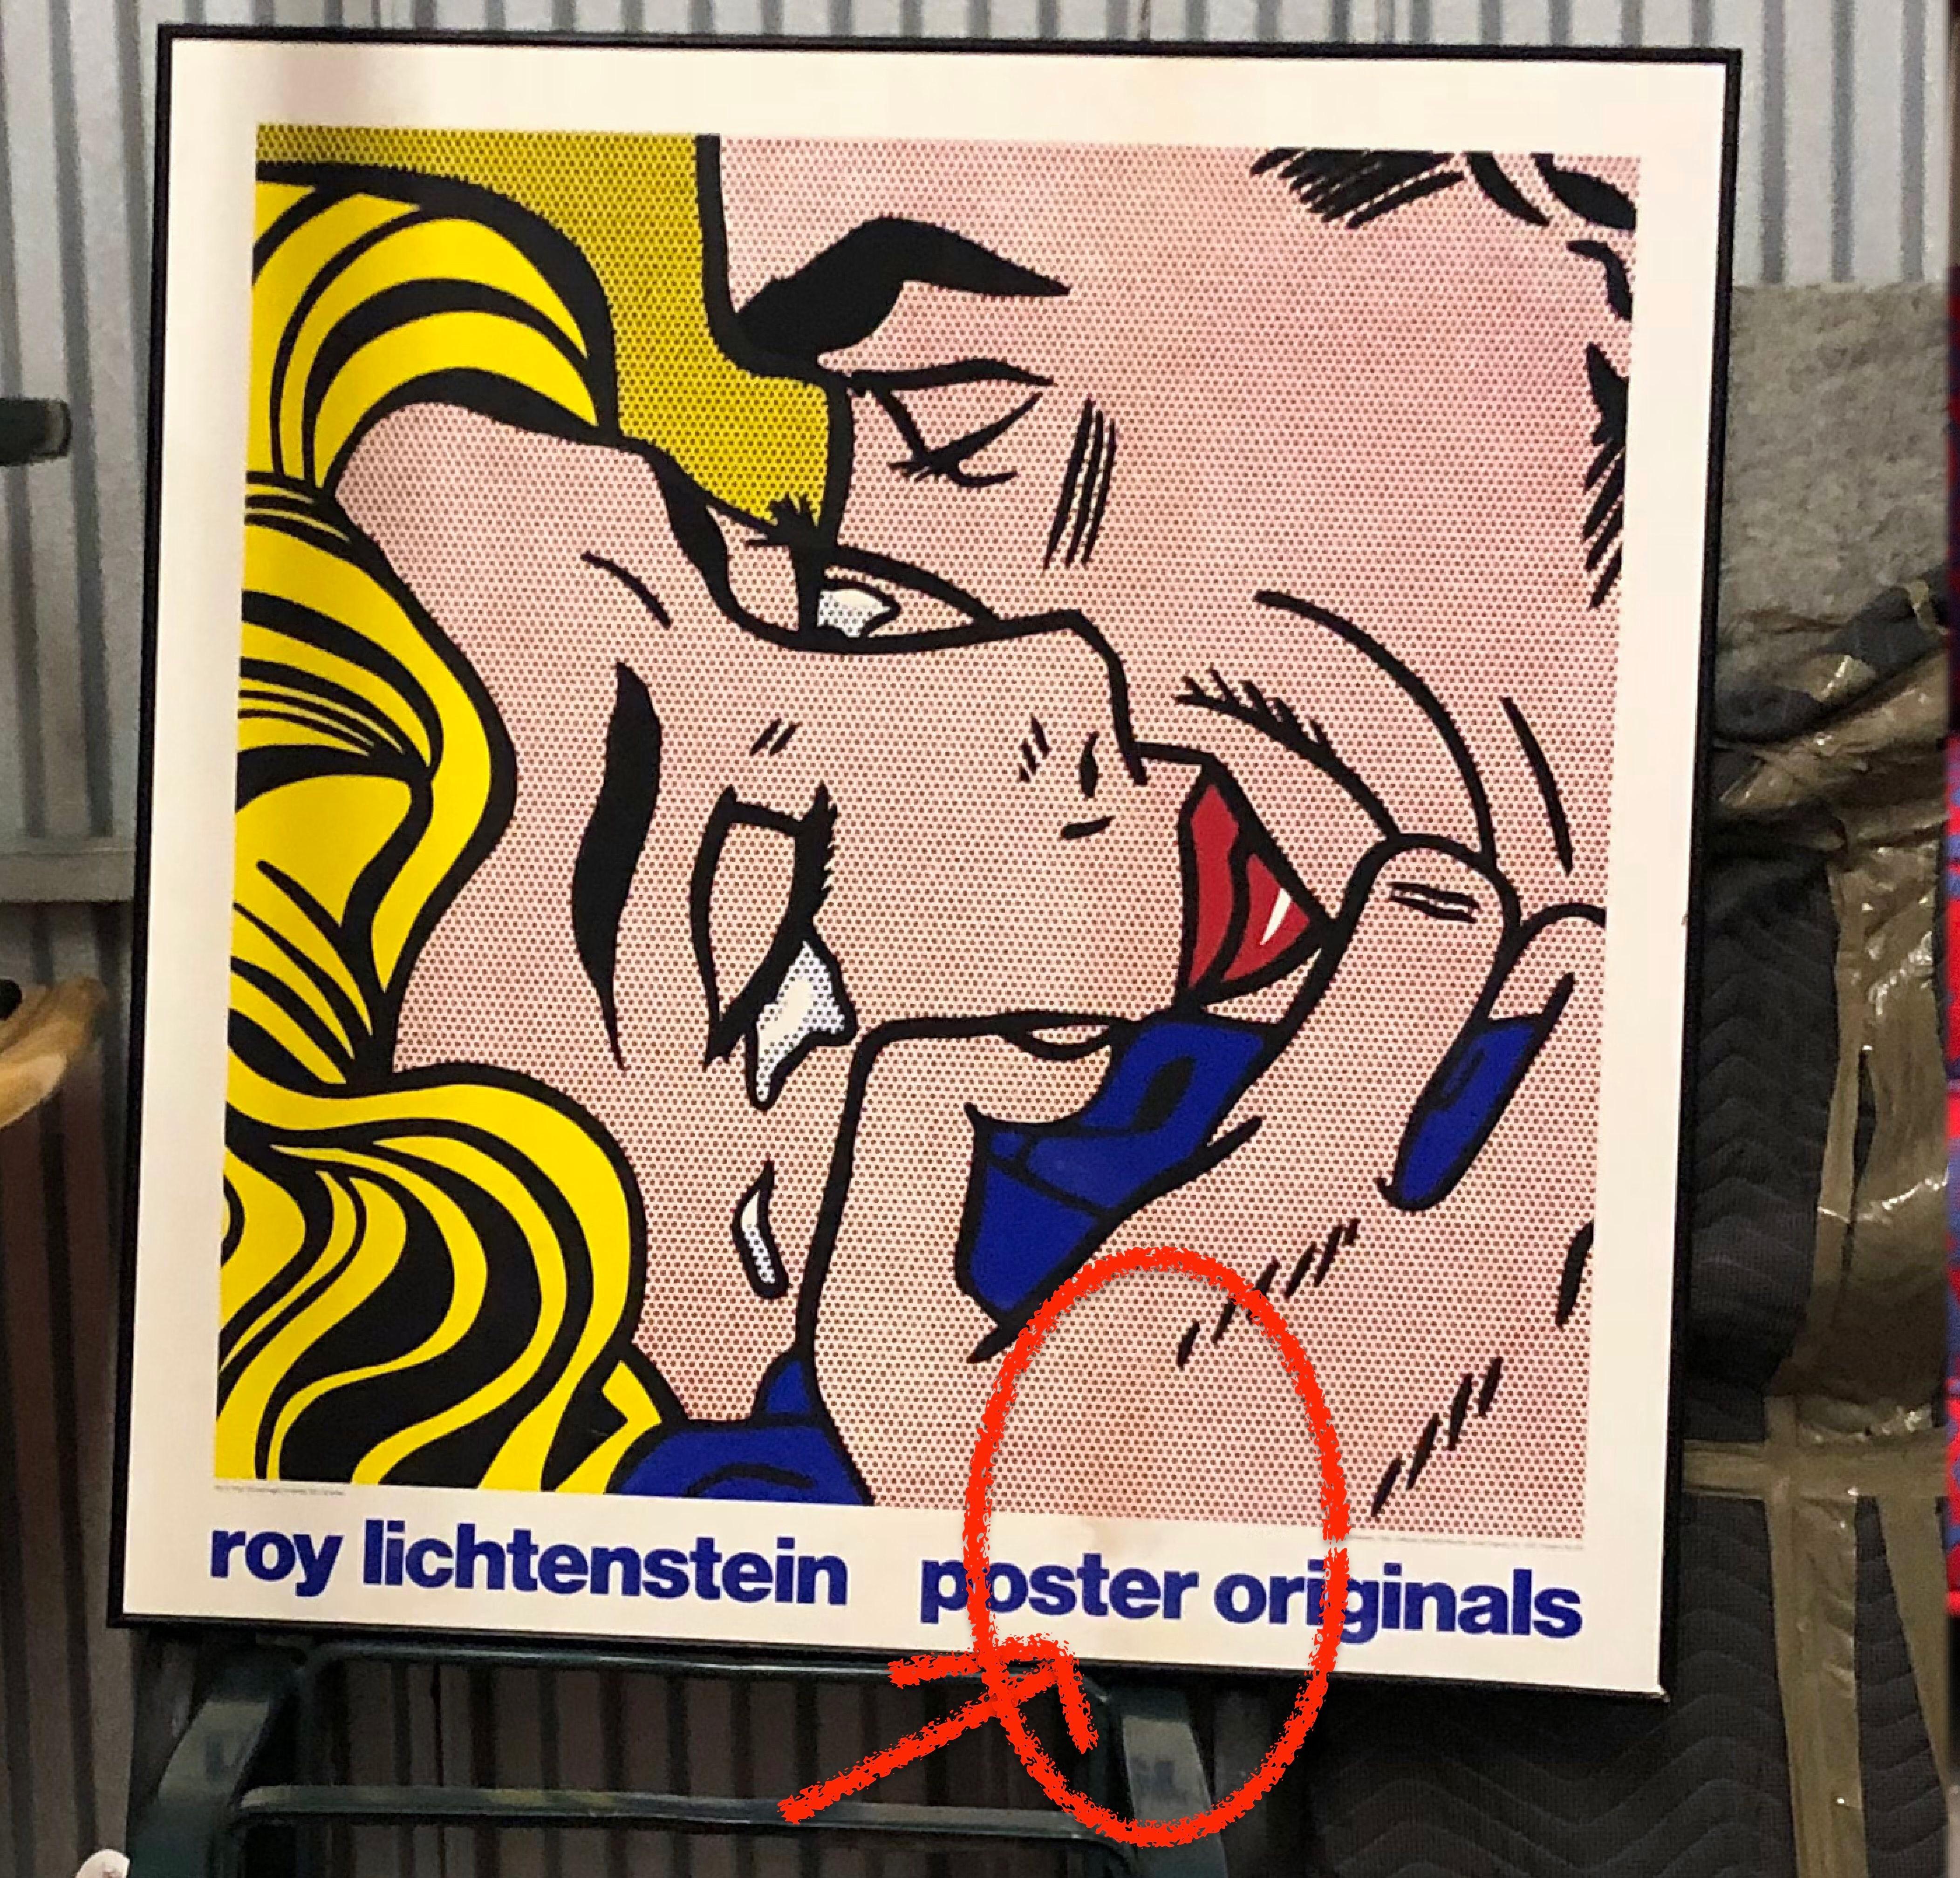 Pop Art Screenprint after Roy Lichtenstein's 